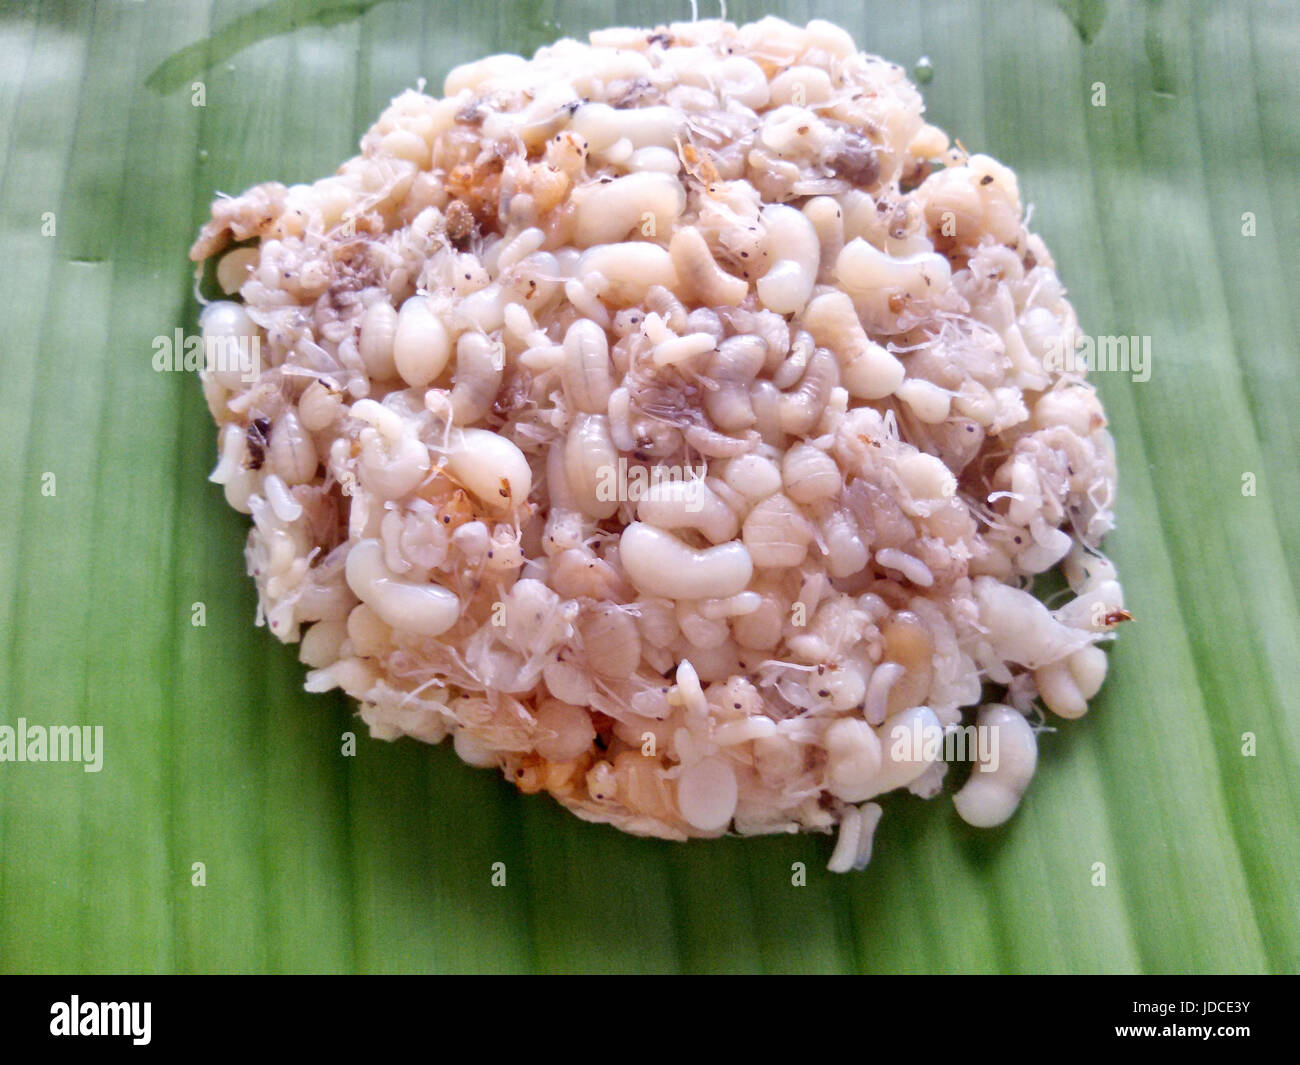 Oeufs de fourmis sur feuille de bananier. Bizarre food concept cuisine traditionnelle cuisine locale de la Thaïlande et du Laos.(la nourriture locale) Banque D'Images